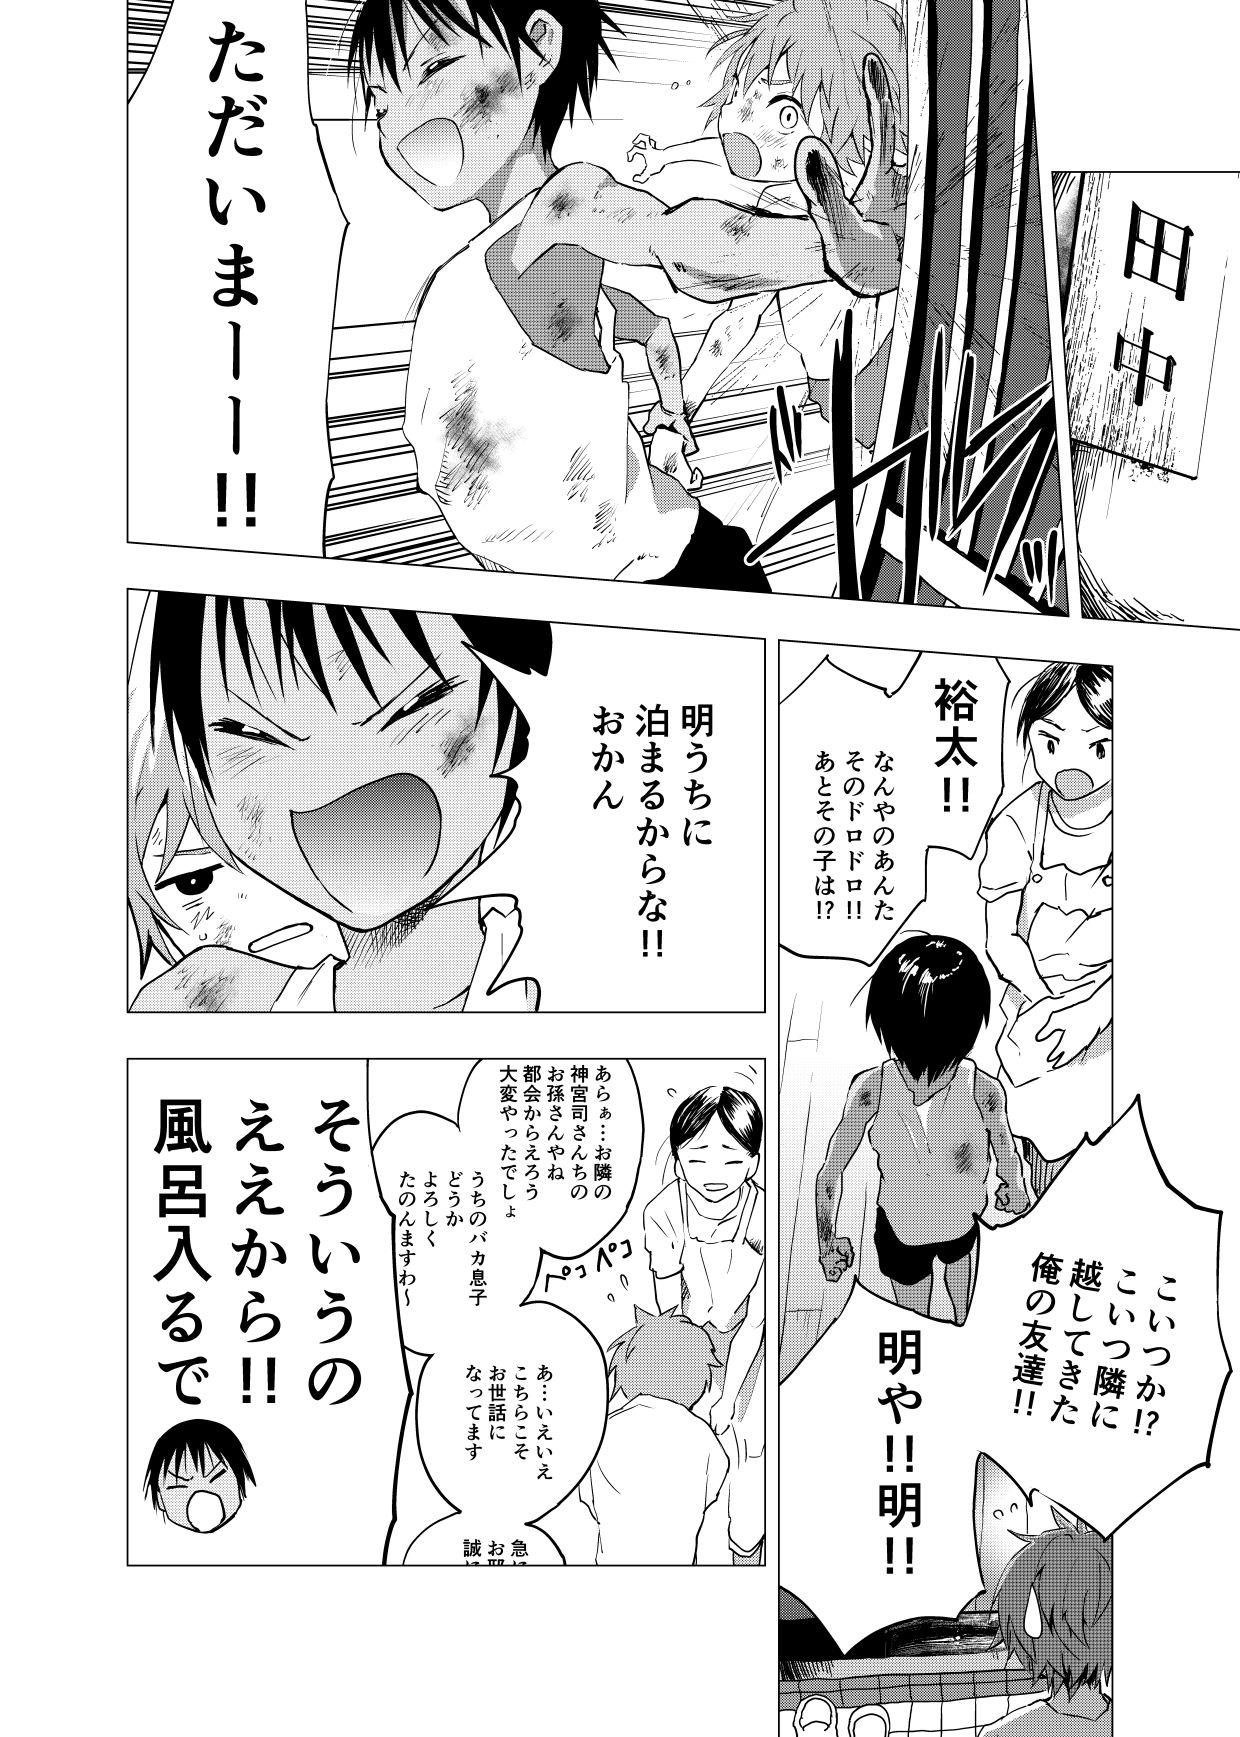 Inaka no Uke Shounen to Tokai no Seme Shounen no Ero Manga 1-6 46